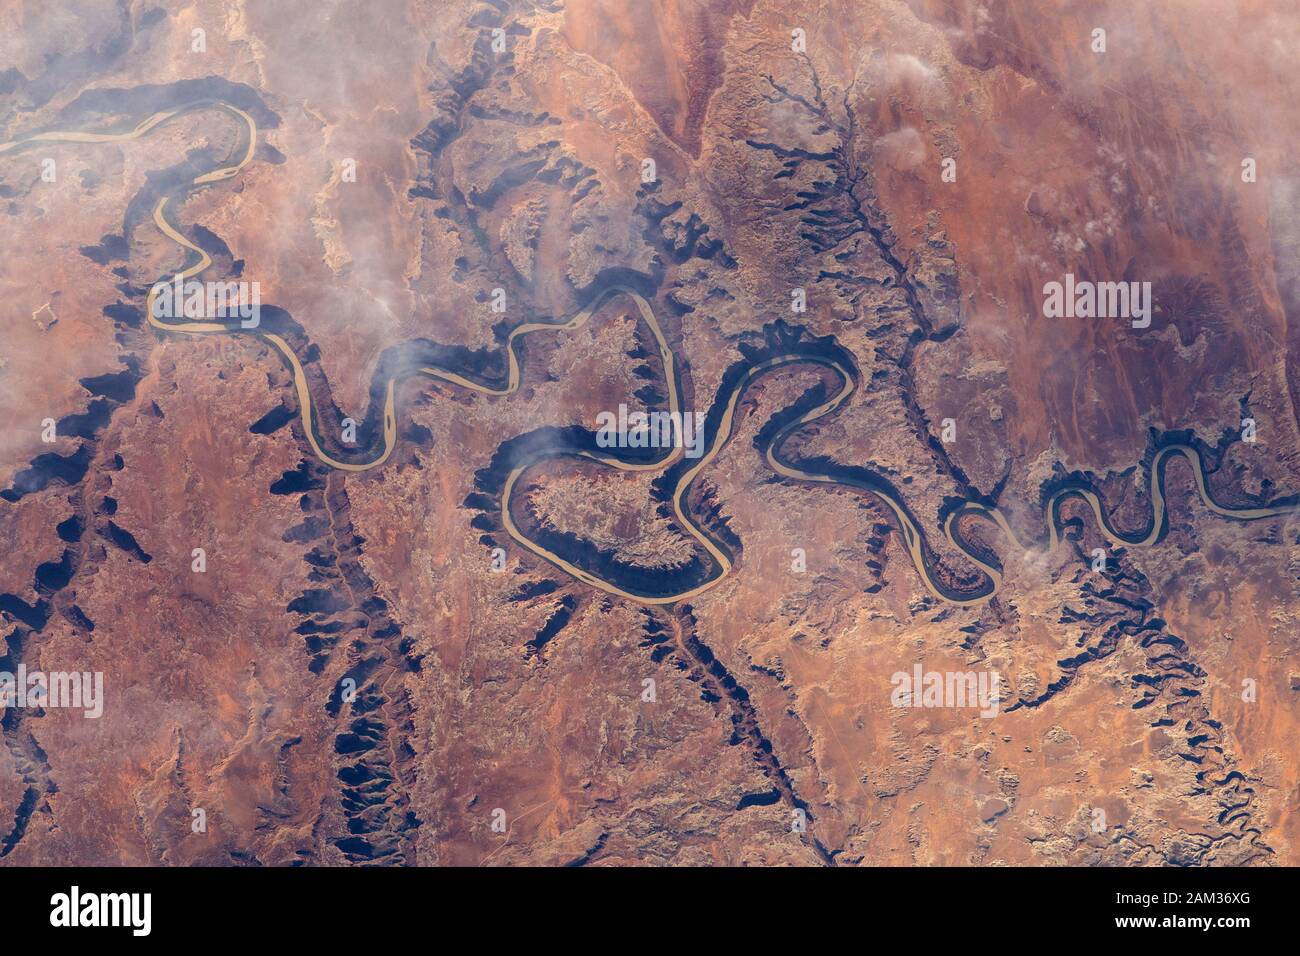 ISS- 22 Oct 2018 - una porción de Green River y sus cañones tributarios en el estado de Utah USA desde la Estación Espacial Internacional Foto de stock